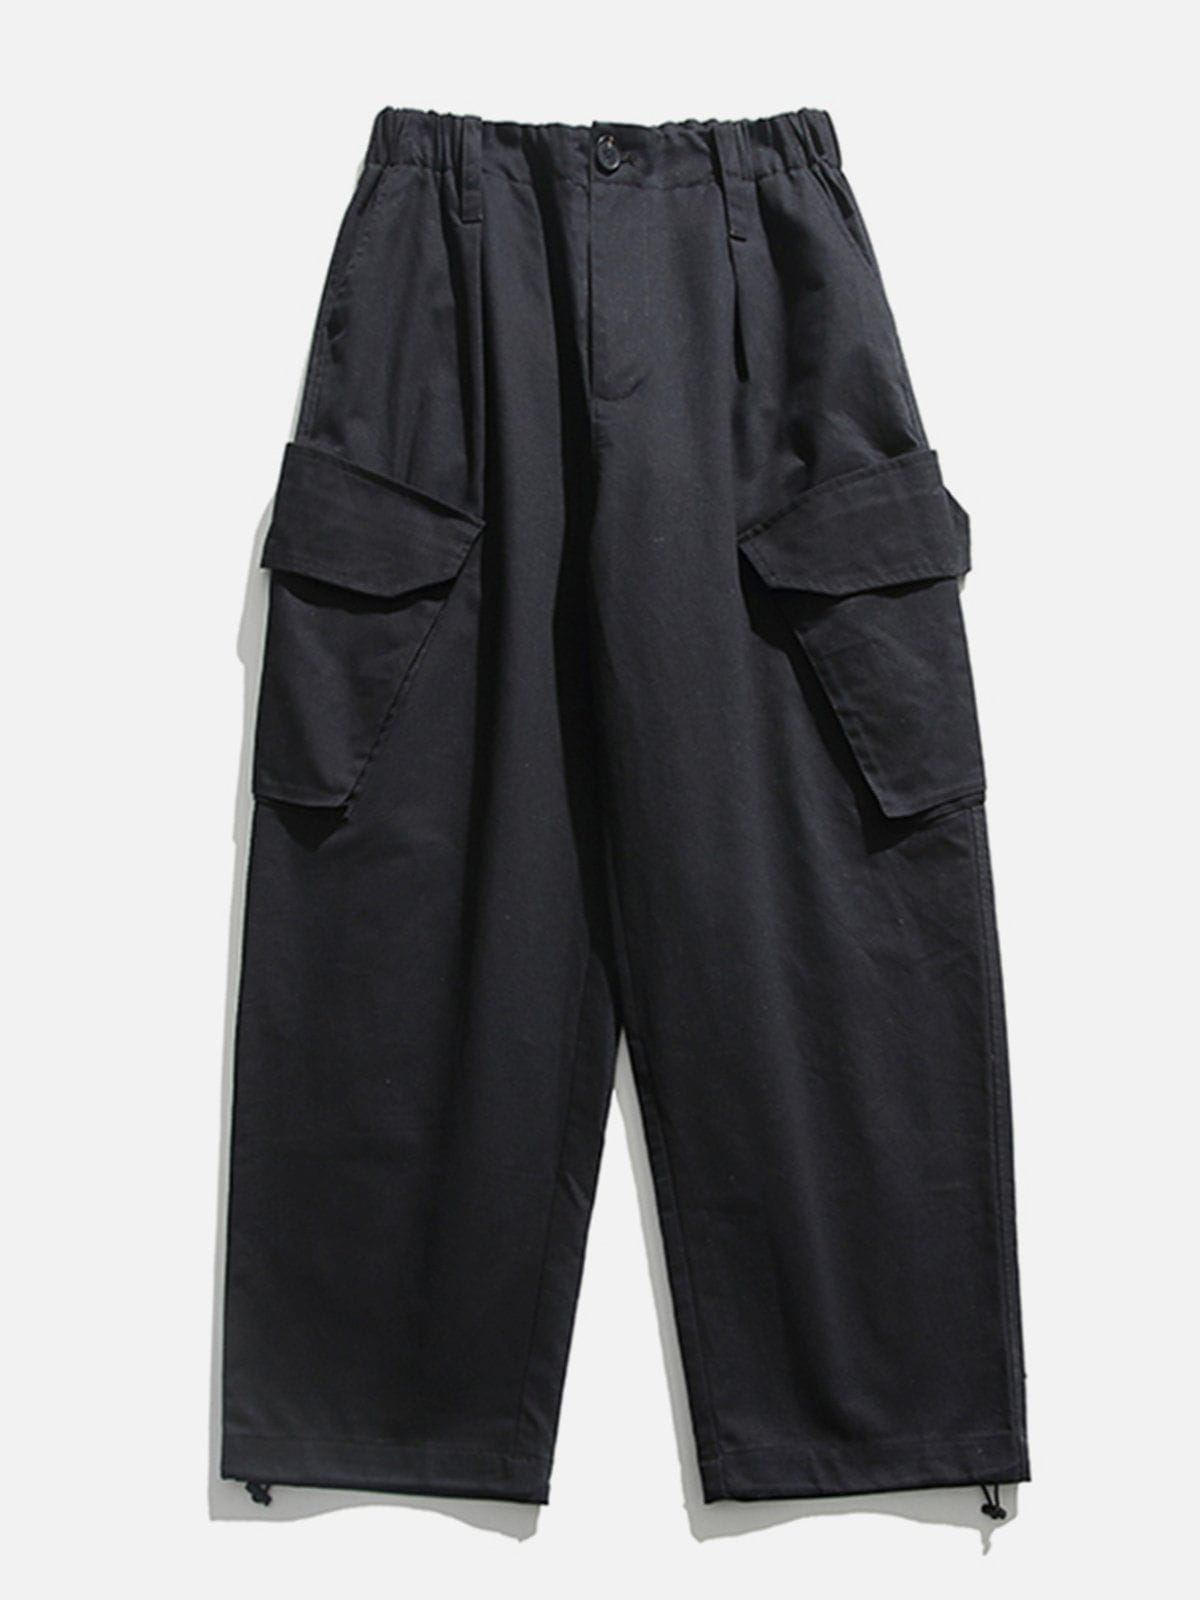 Eprezzy® - Patchwork Solid Pants Streetwear Fashion - eprezzy.com